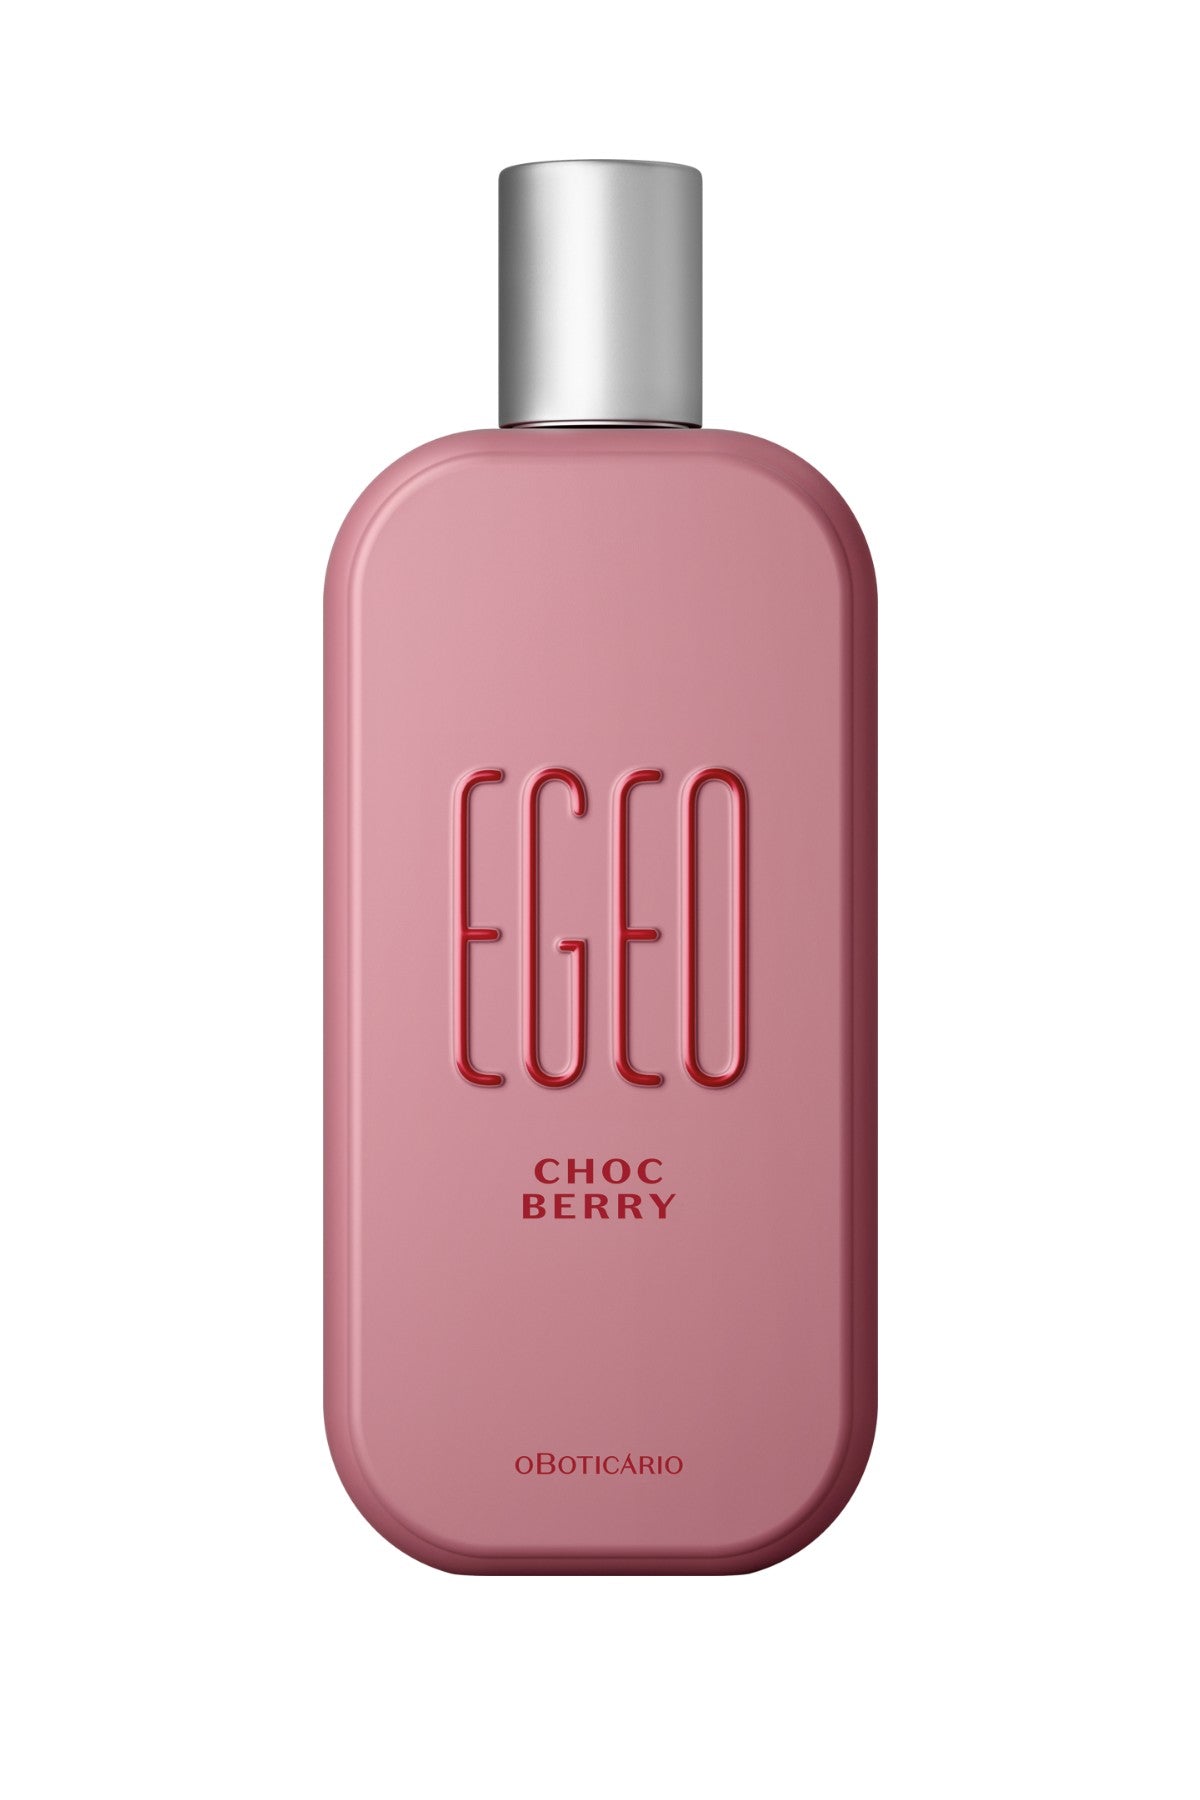 Egeo Choc Berry Eau de Toilette for Women